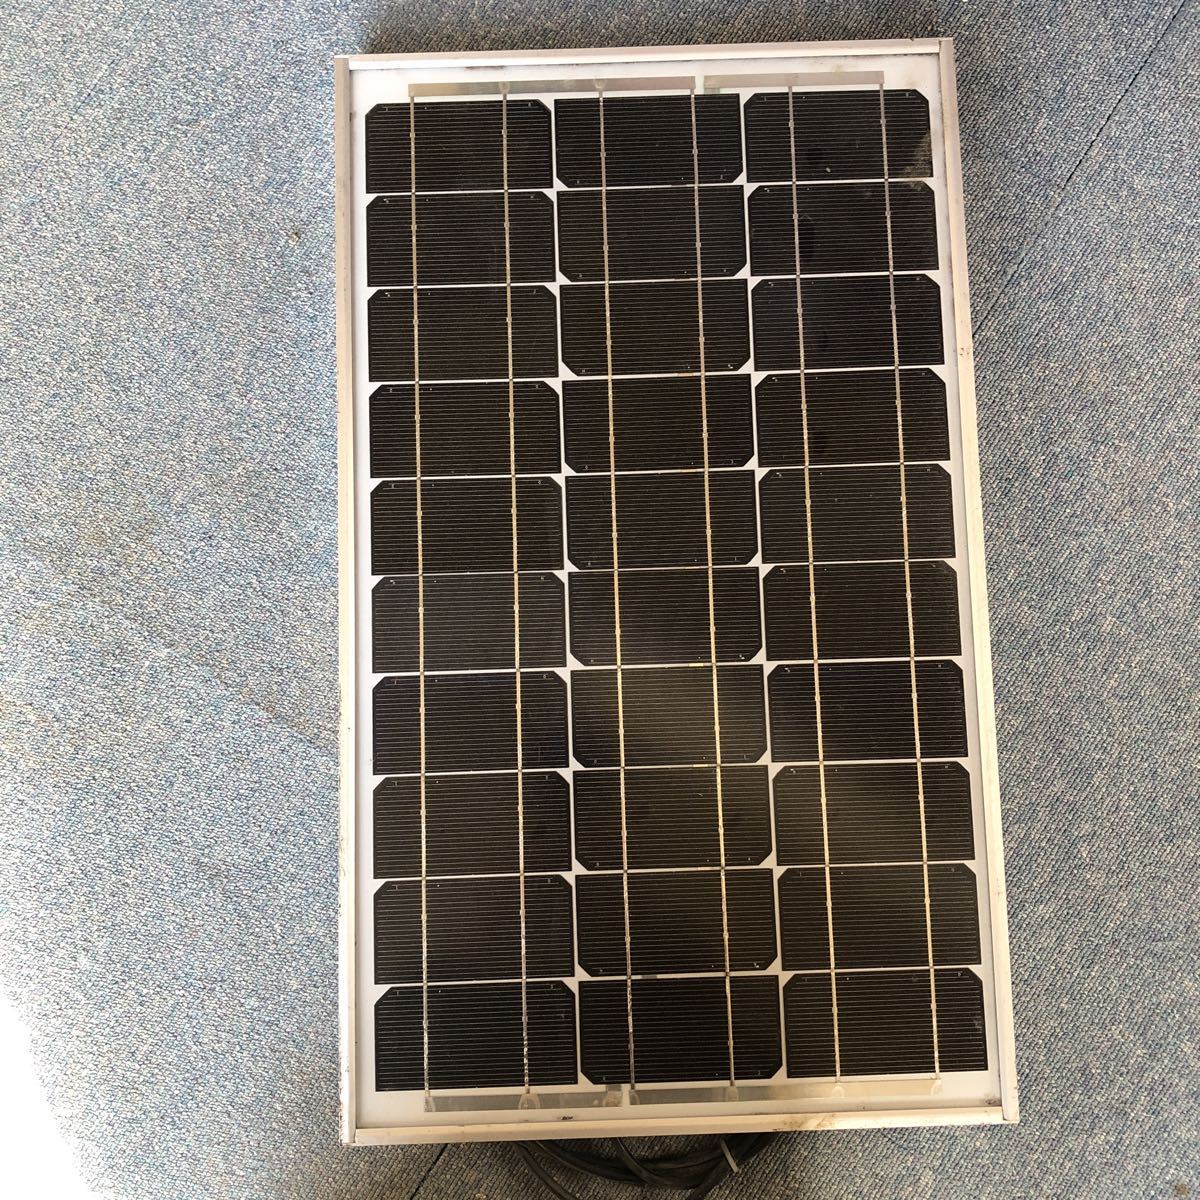 ソーラーパネル 太陽光発電 gt230 12v充電にコントローラー付き当方も愛用農機具